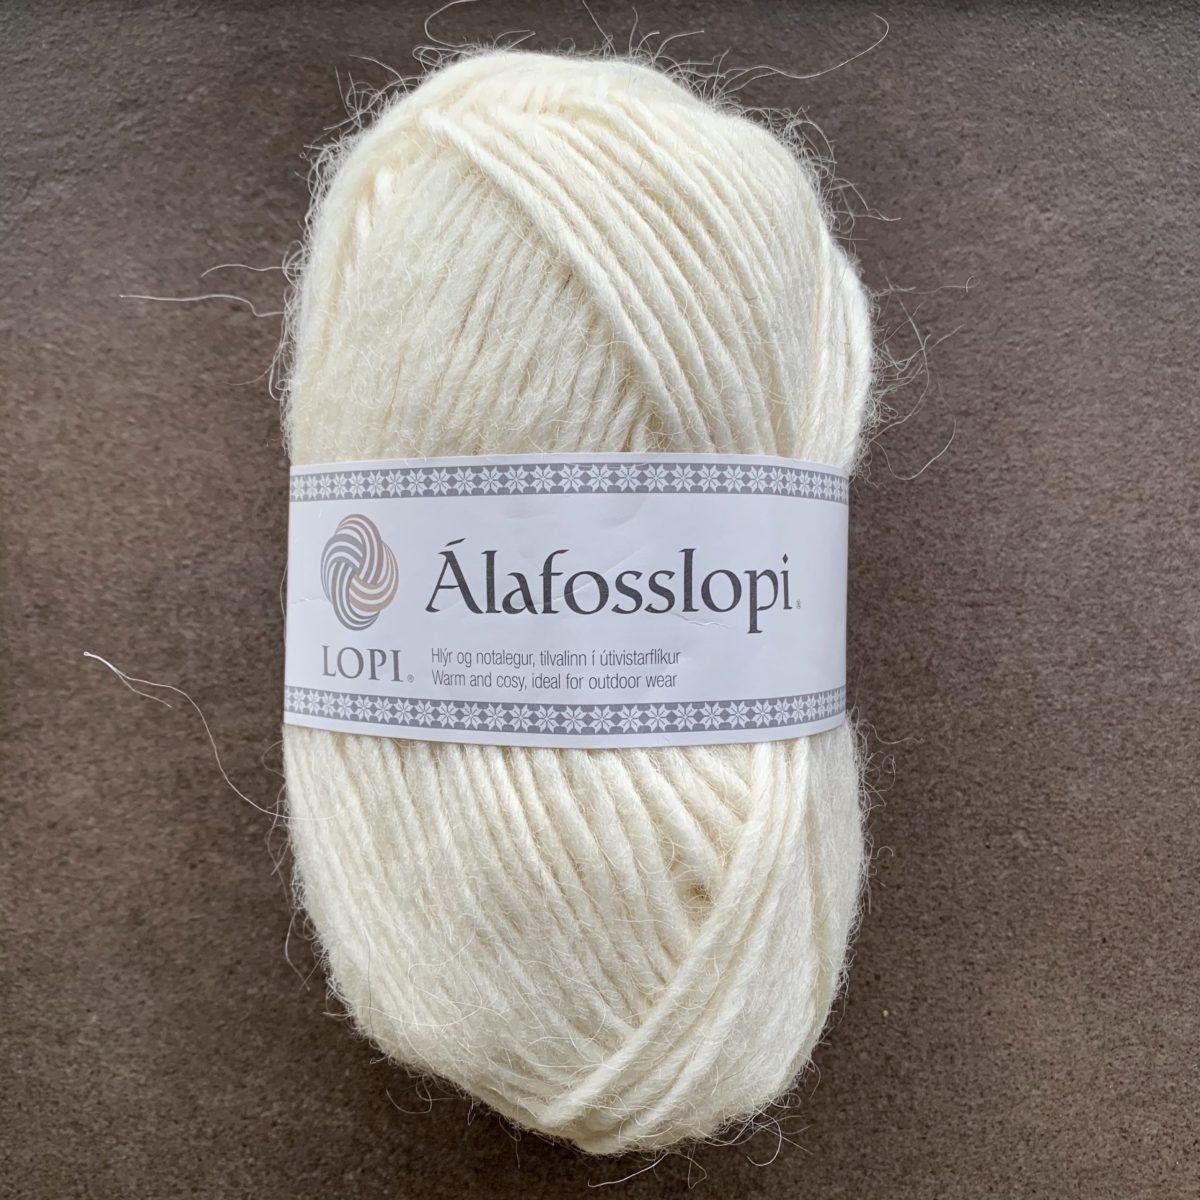 Lopi Alafosslopi uld - Islandsk i høj - Pindeliv